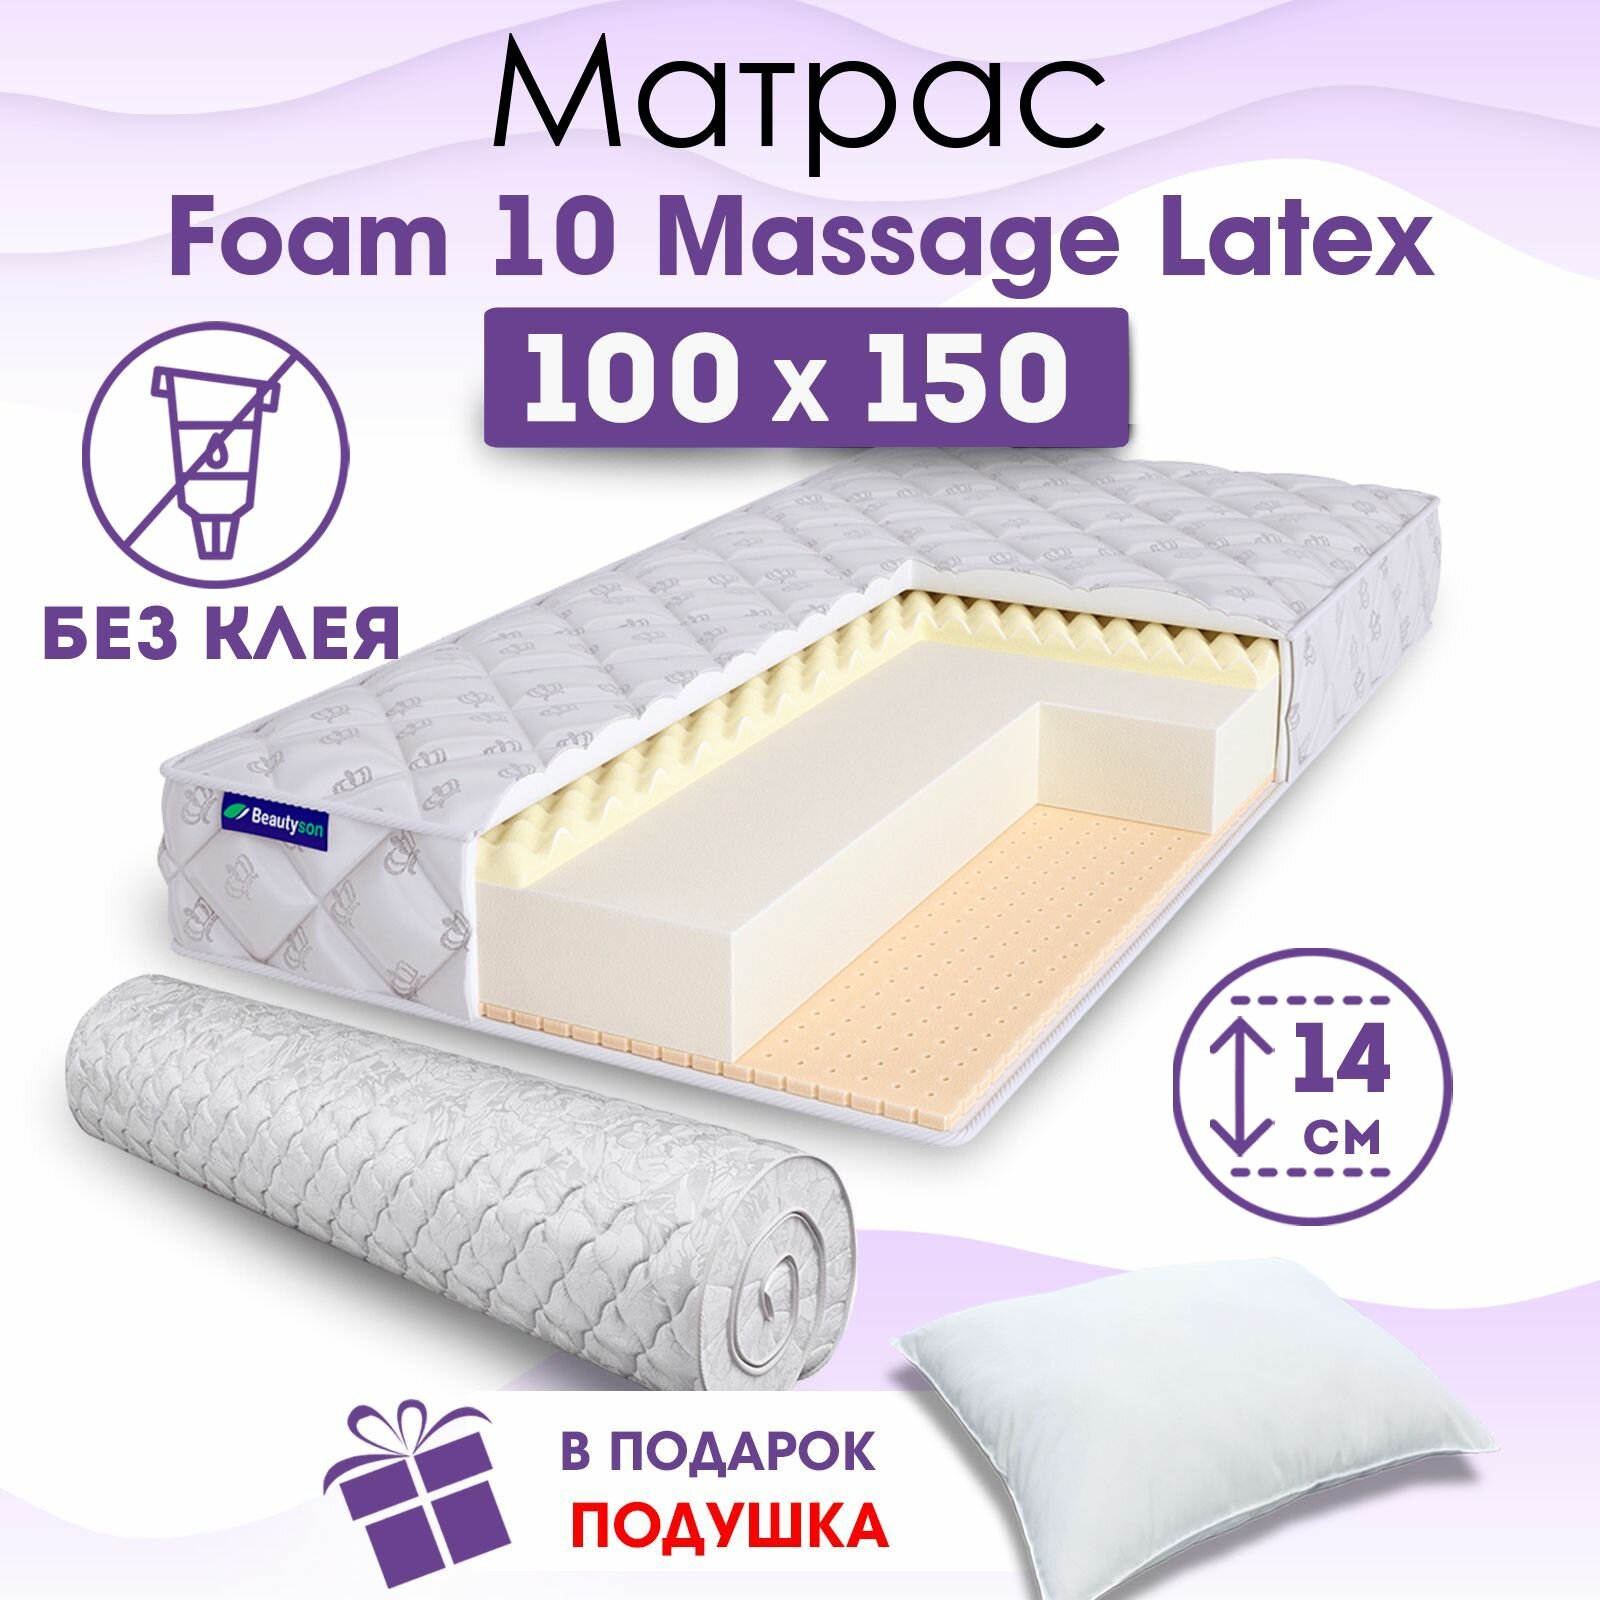 Ортопедический матрас Beautyson Foam 10 Massage Latex без клея, 100х150, 14 см, беспружинный, односпальный, на кровать, для дивана, мягкий, не высокий